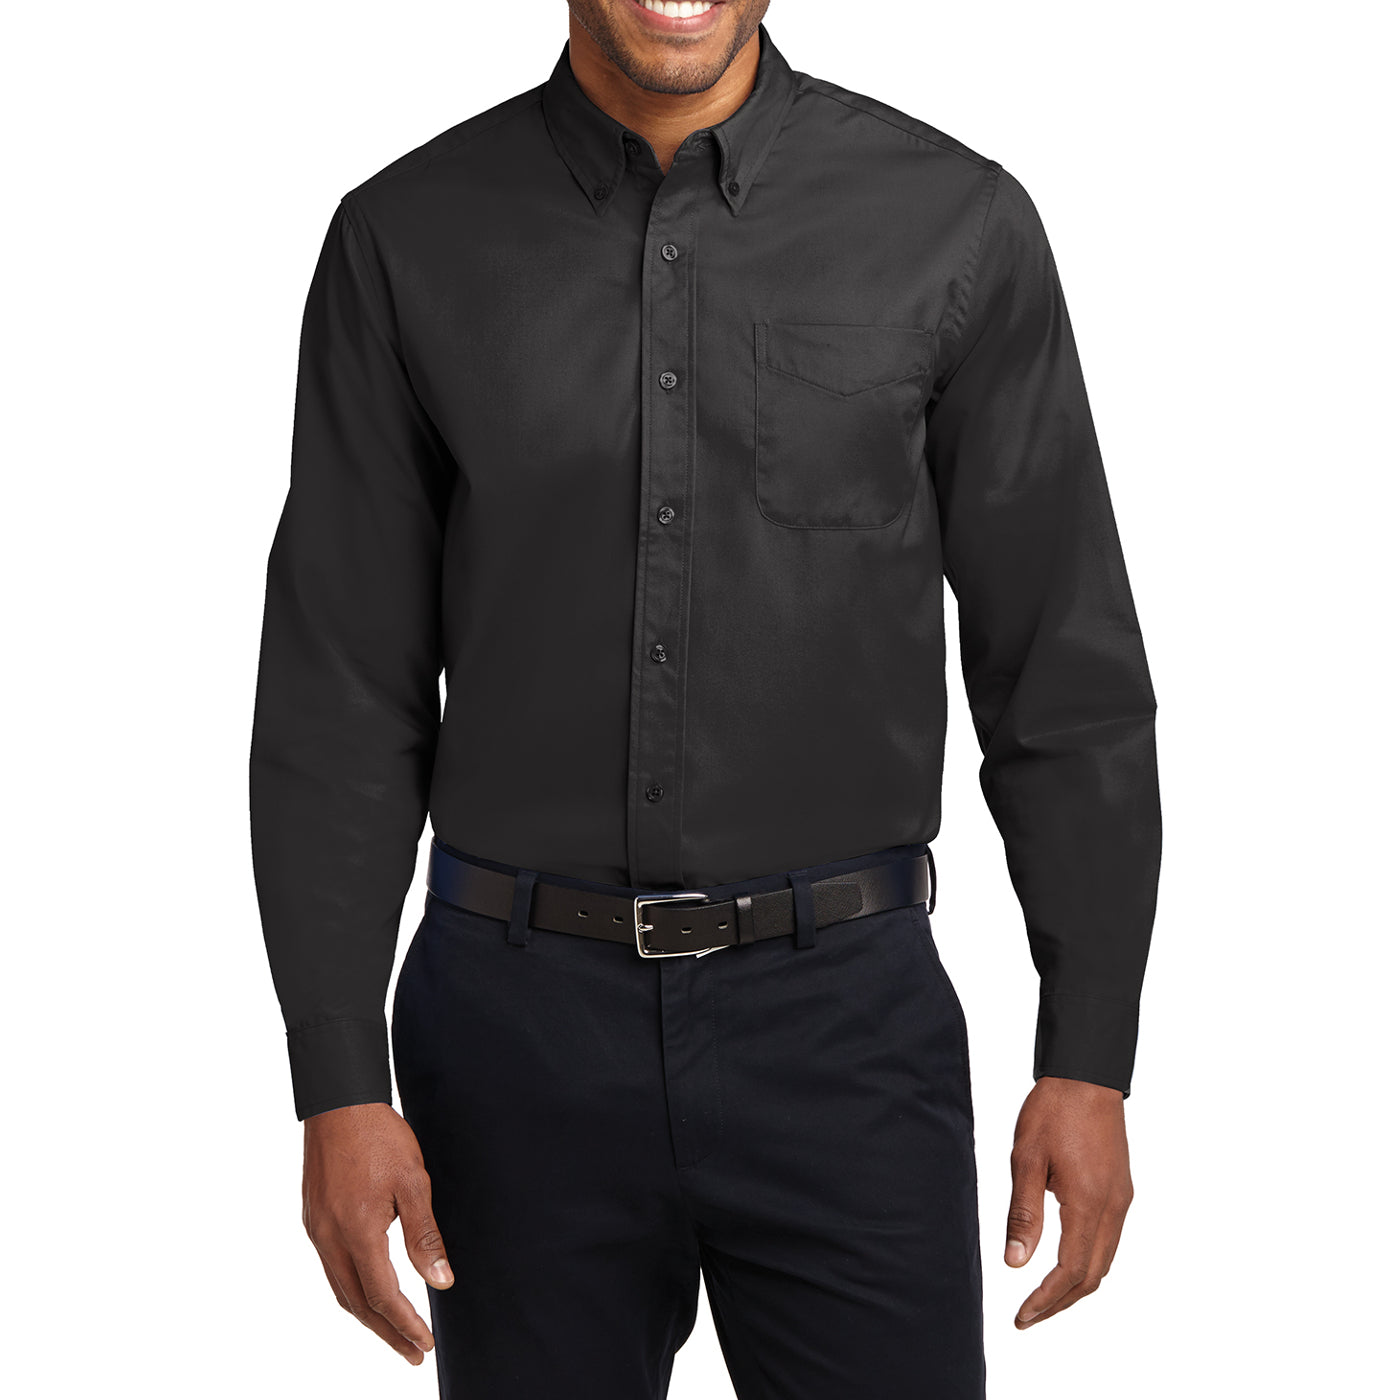 Men's Long Sleeve Easy Care Shirt - Black/ Light Stone - Front